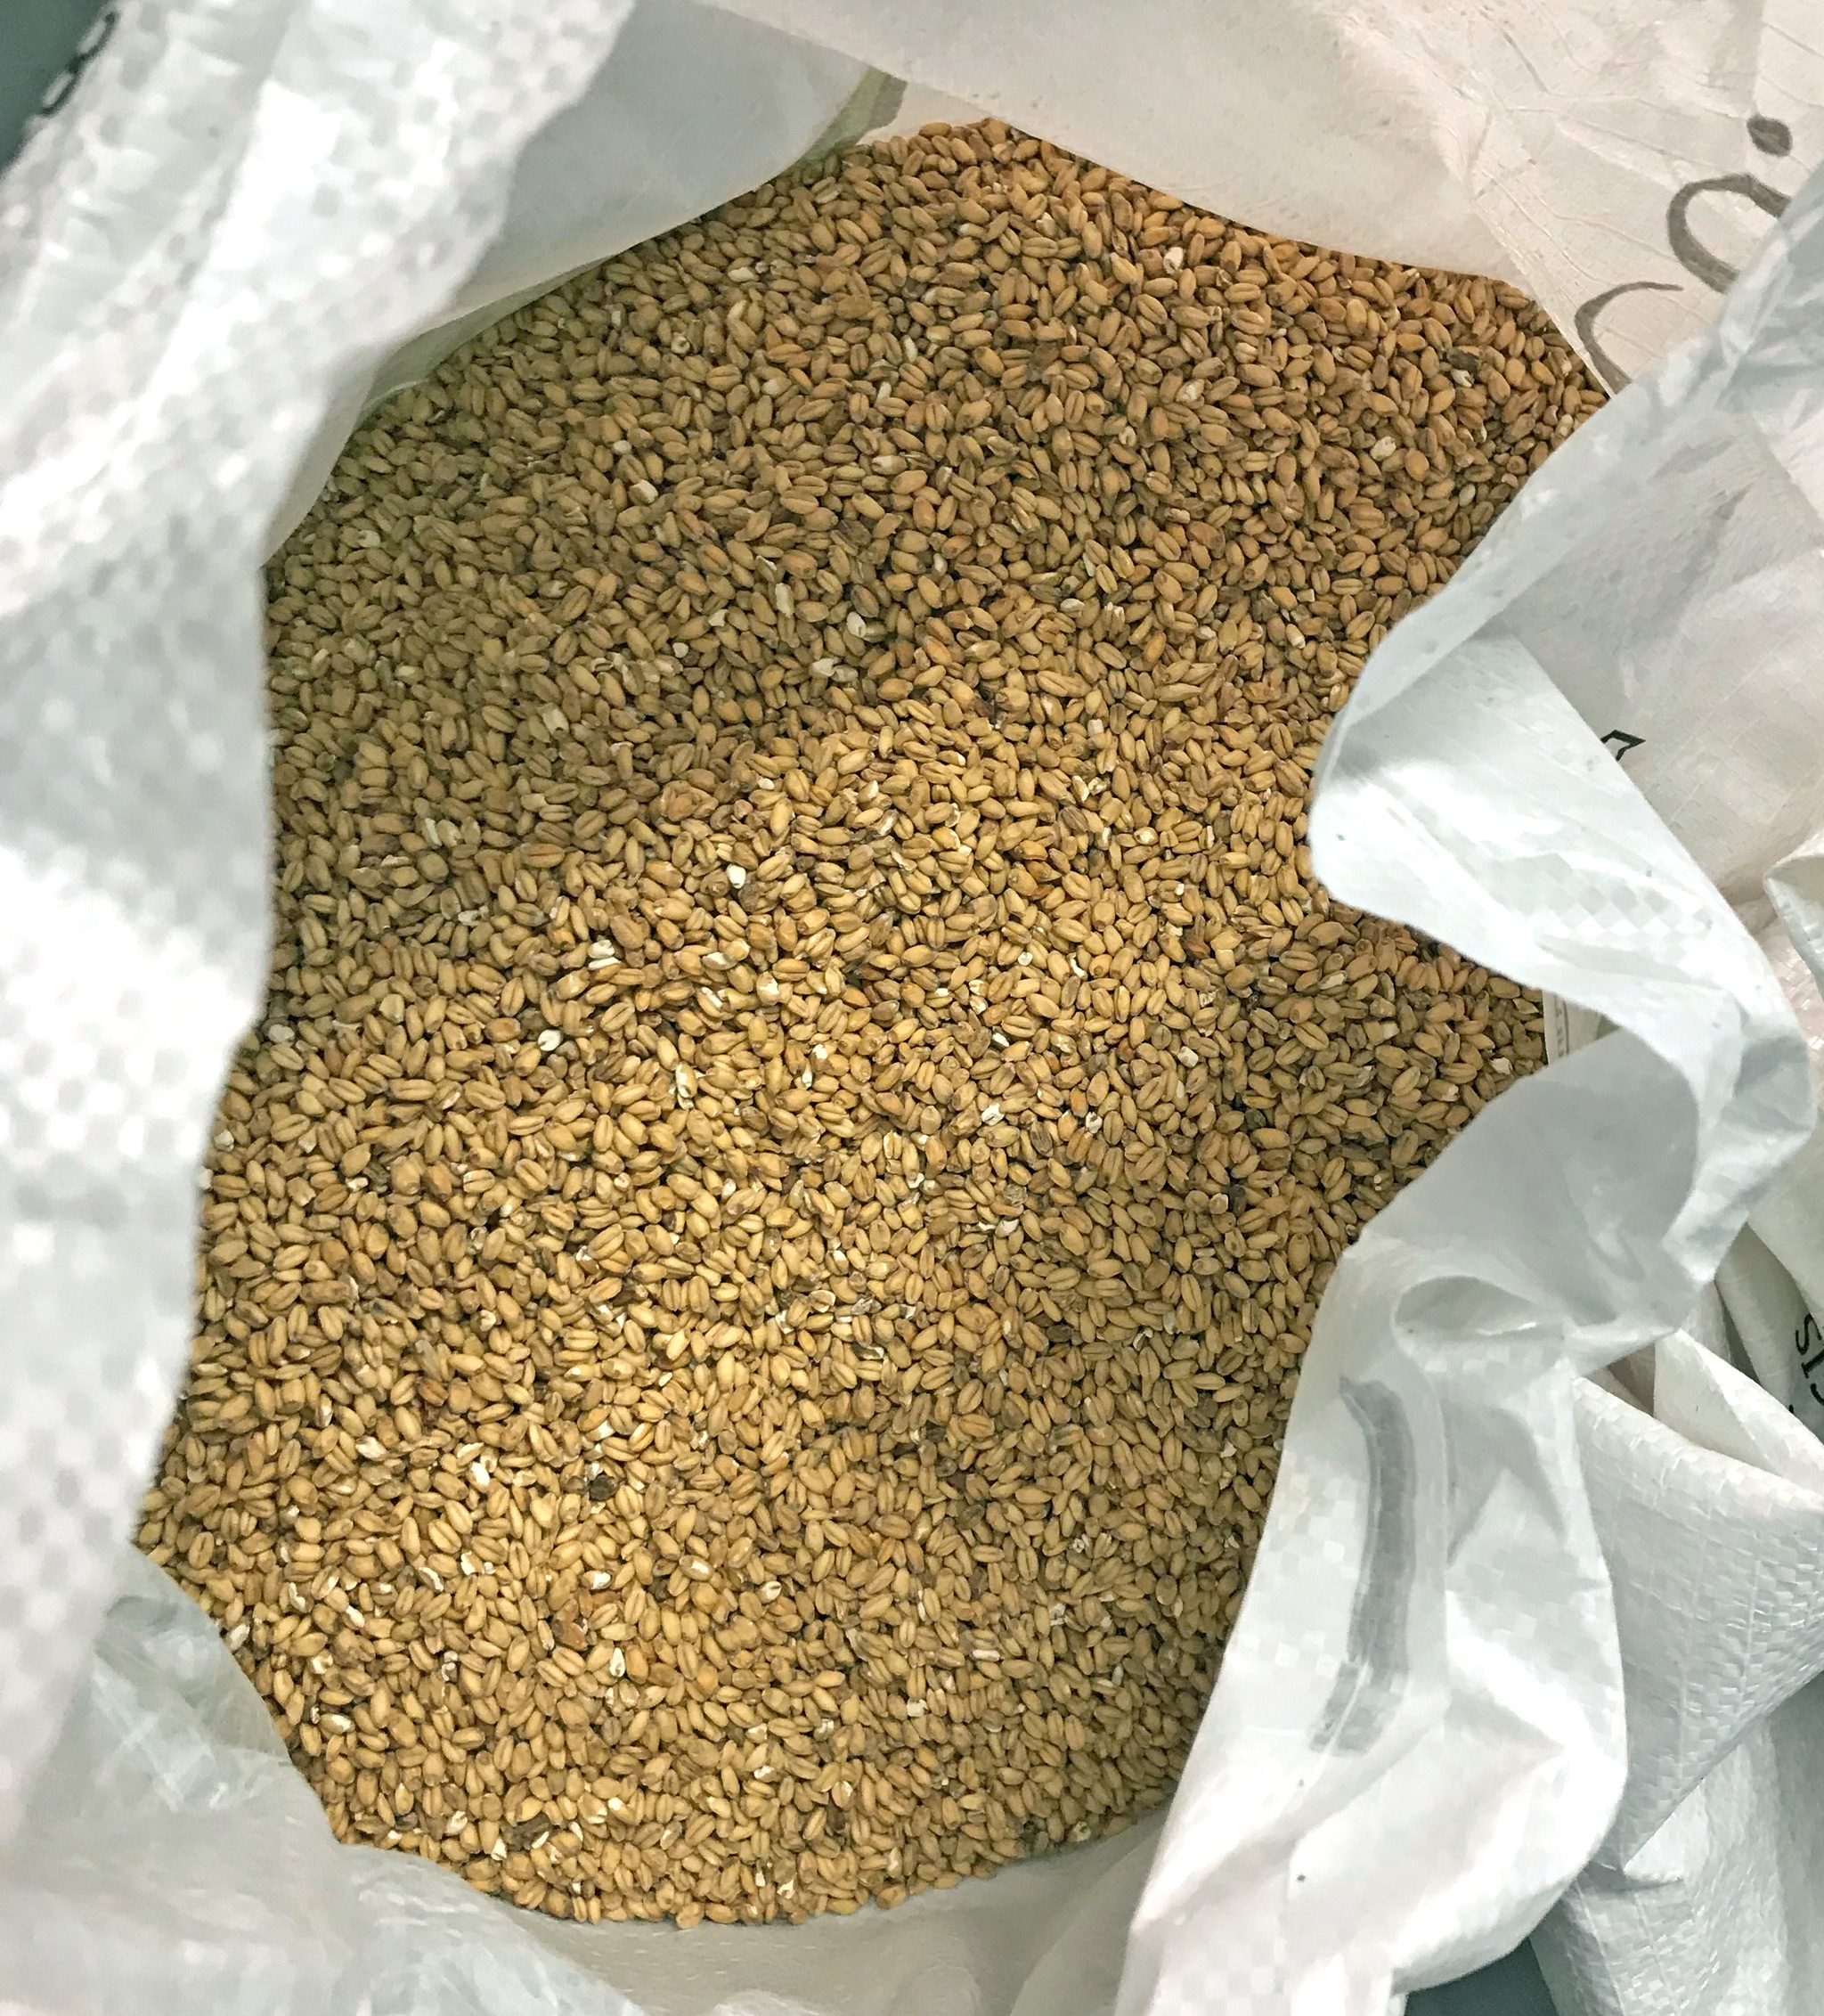 Wheat malt - a little crunchier